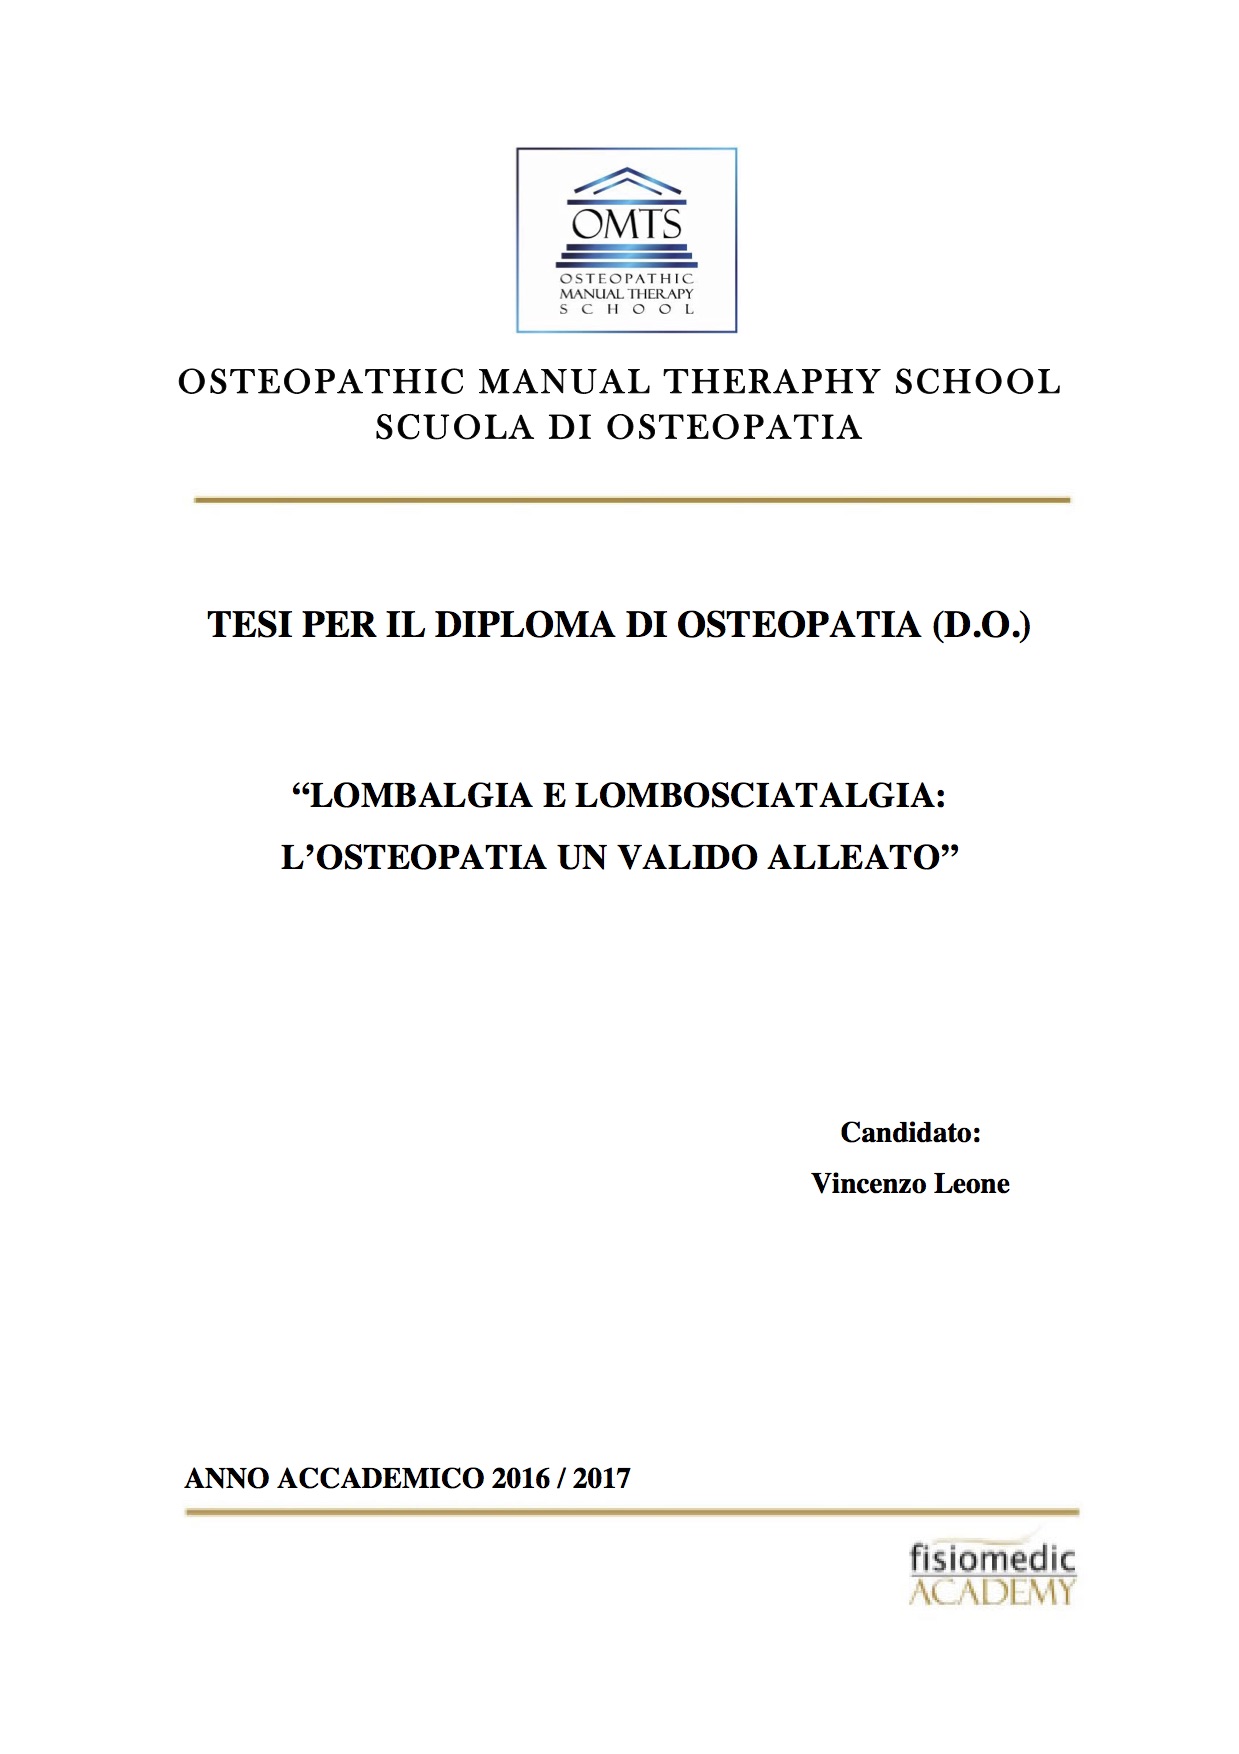 Vincenzo Leone Tesi Diploma Osteopatia 2017